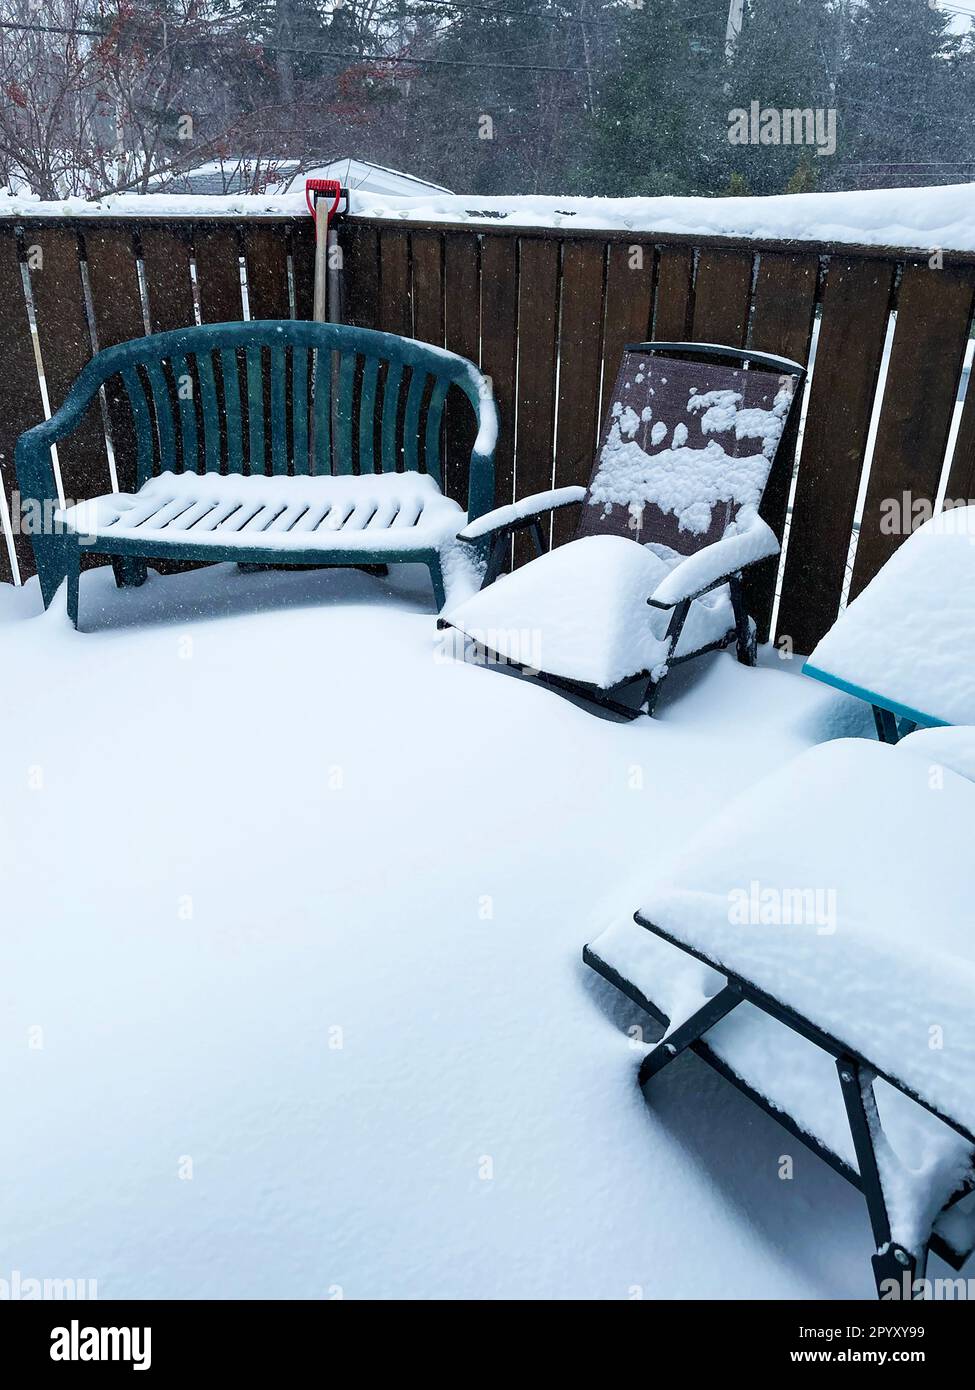 Mobilier d'extérieur sur une terrasse, recouvert d'une épaisse couche de neige fraîche. Banque D'Images